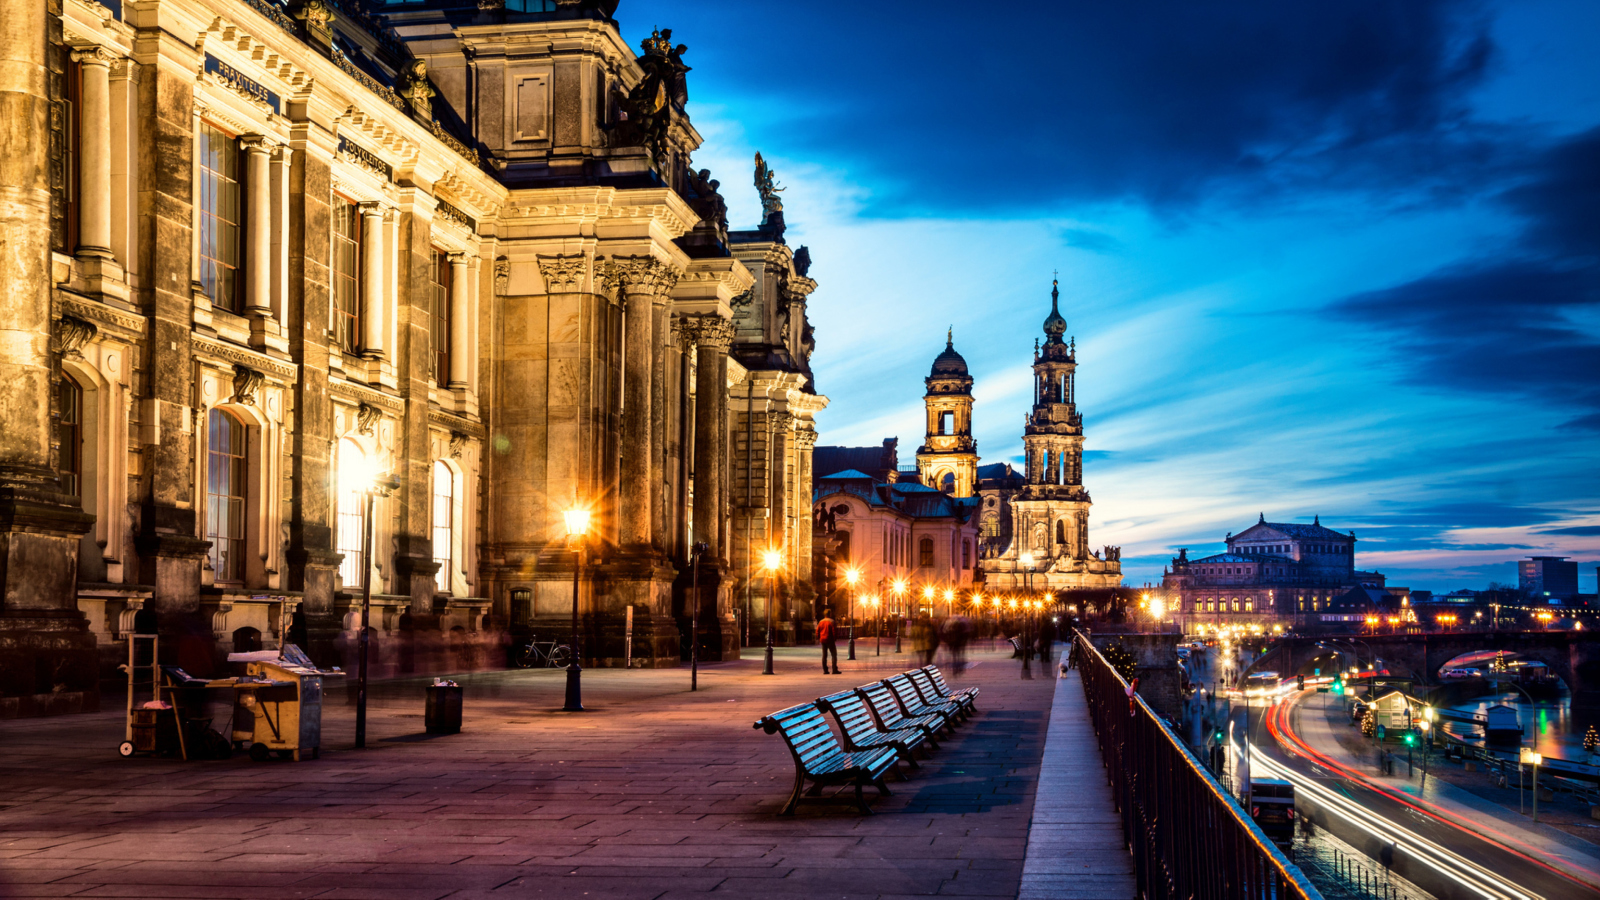 Altstadt, Dresden, Germany screenshot #1 1600x900